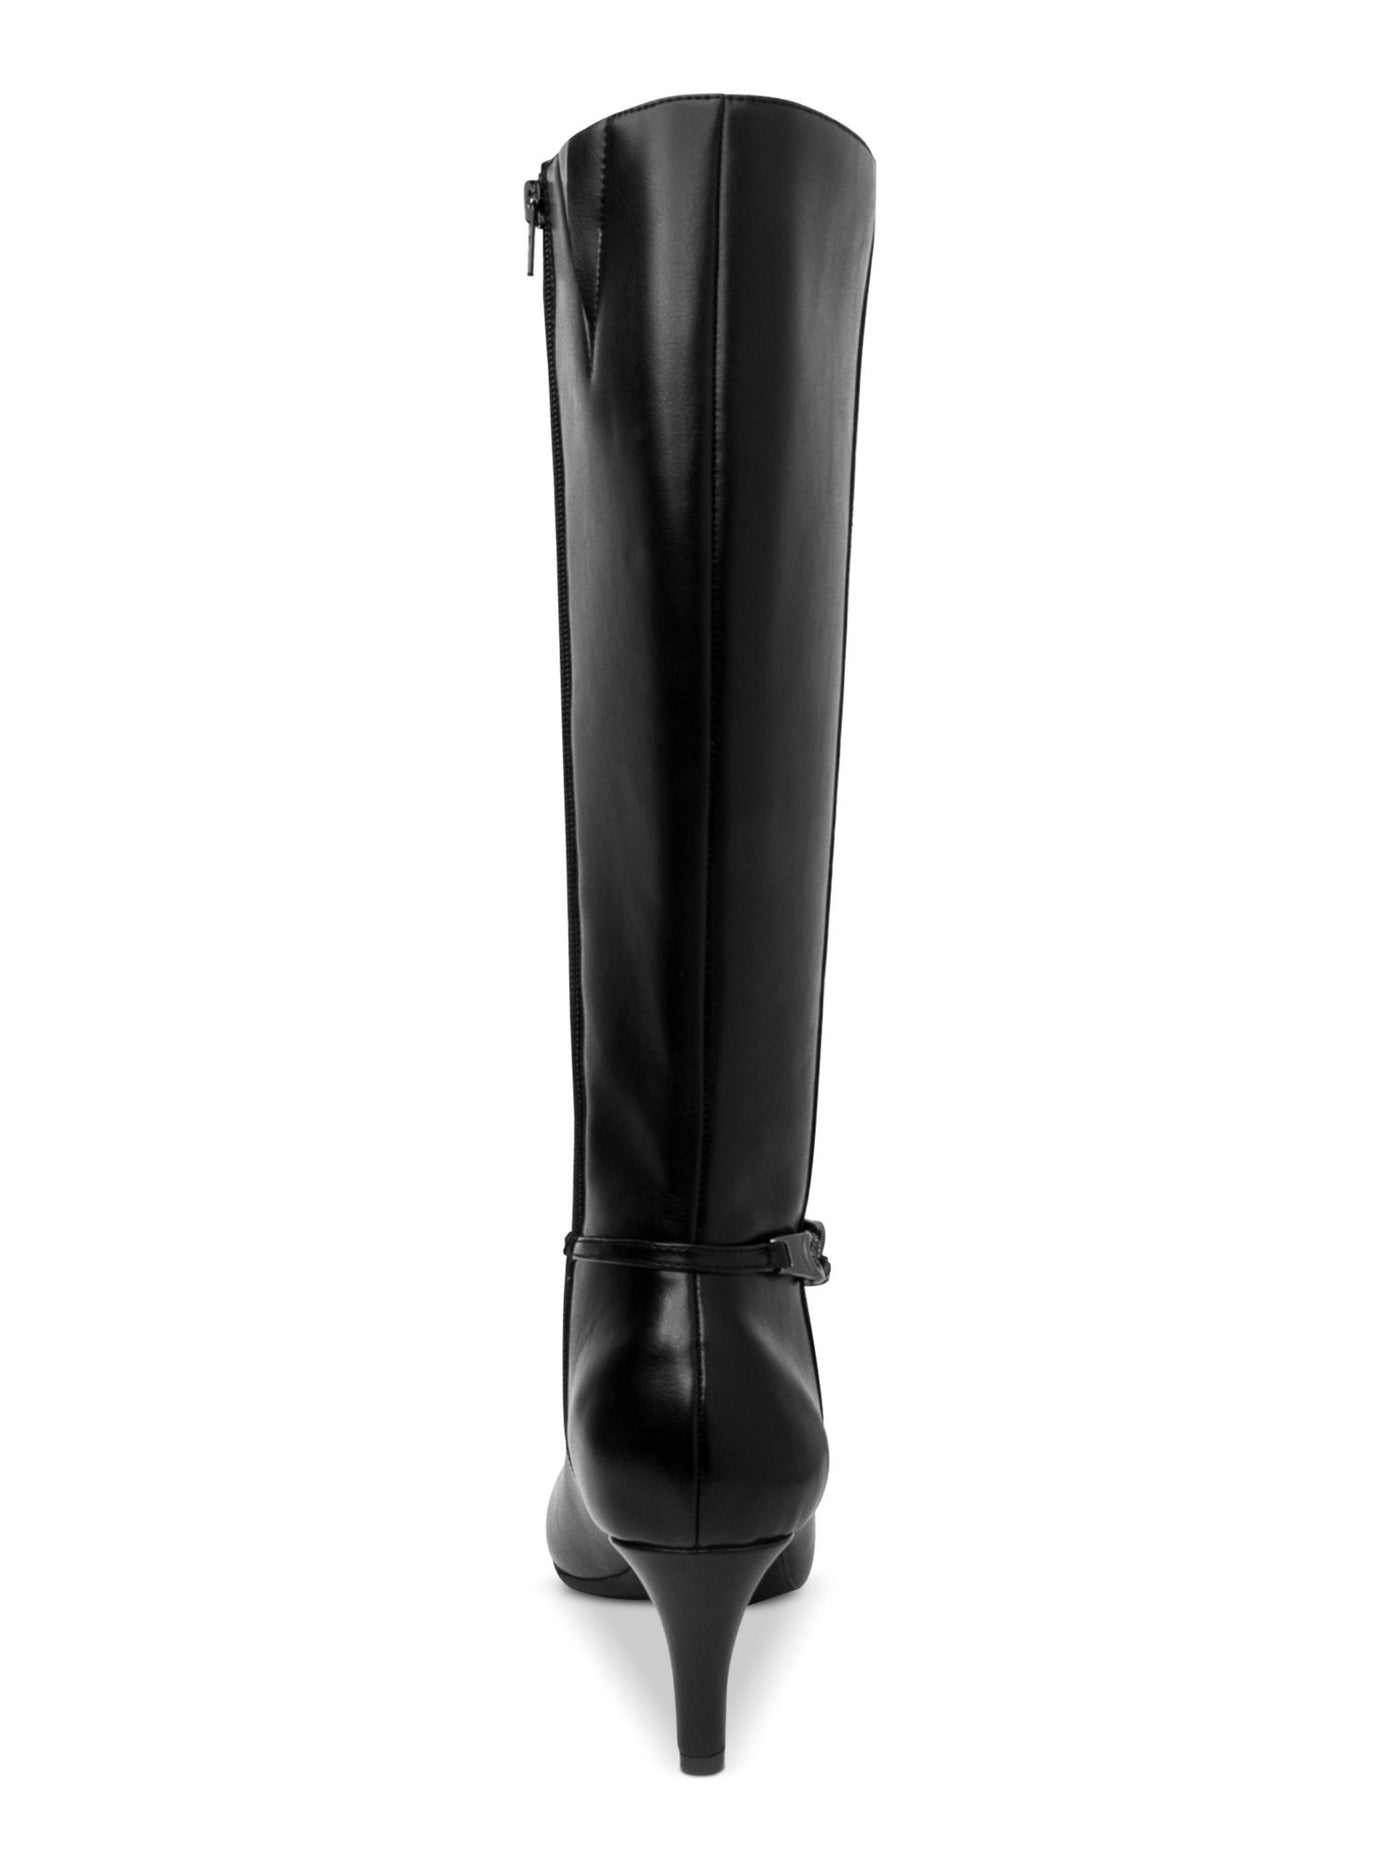 KAREN SCOTT Womens Black Chain Accent Padded Hanna Almond Toe Sculpted Heel Zip-Up Dress Boots 10.5 M